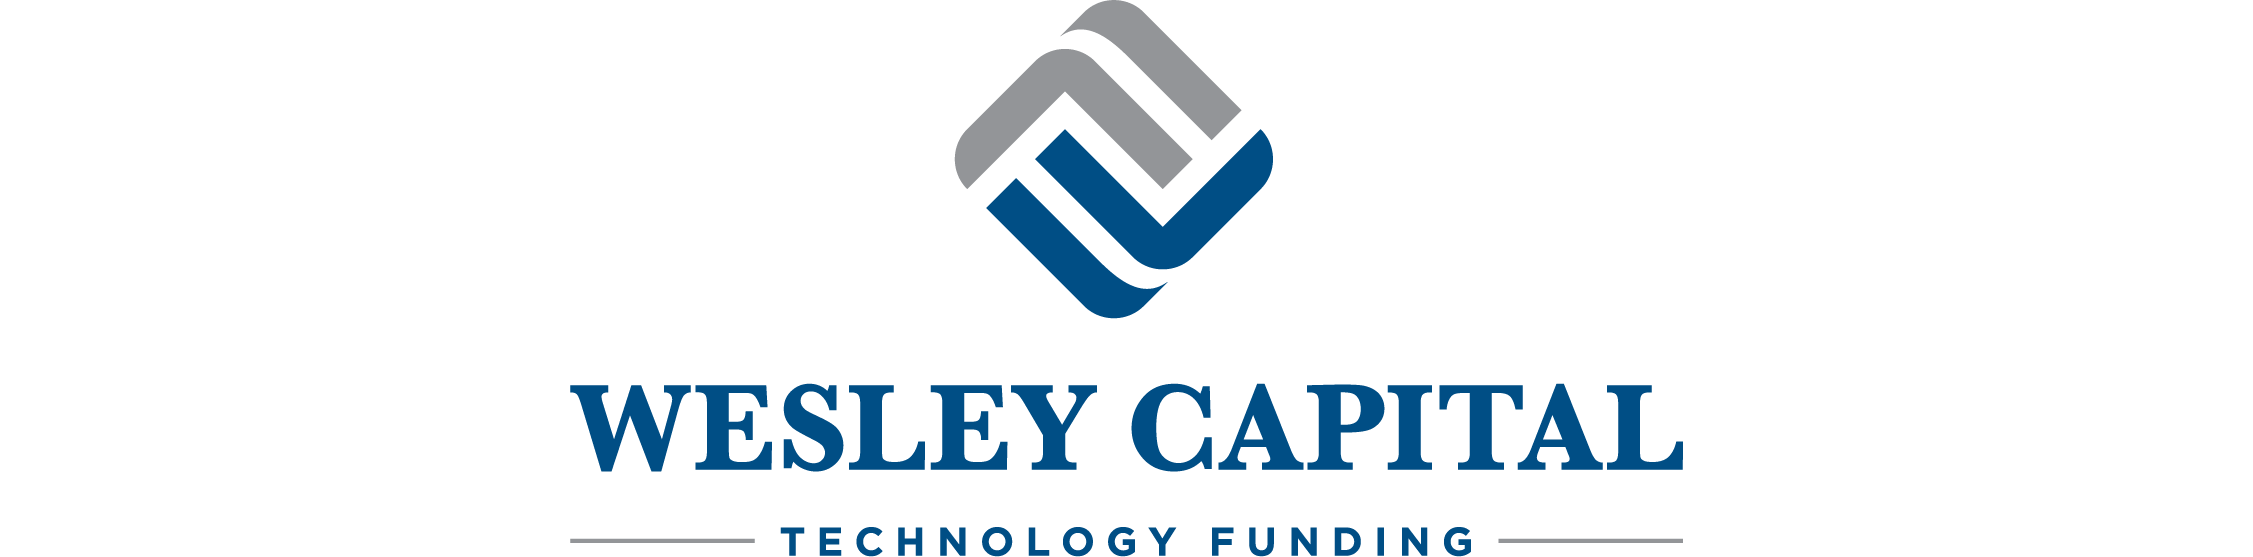 Wesley Capital | Technology Funding